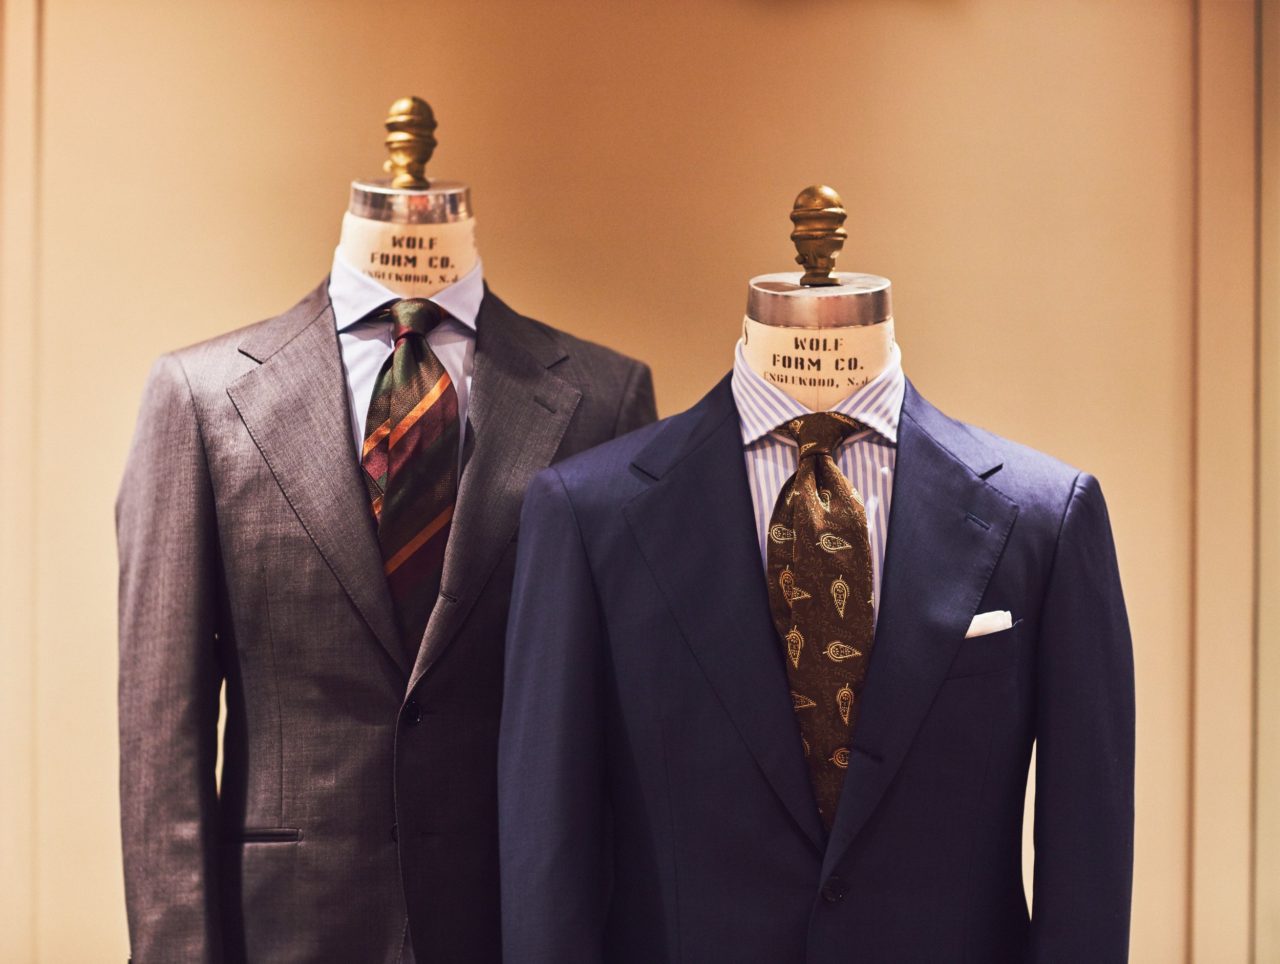 ビジネススーツ・紳士服をご紹介するTHE G'S HIDEOUT.（ザ・ジーズ・ハイドアウト）でスーツのオーダーをする事が出来ます。